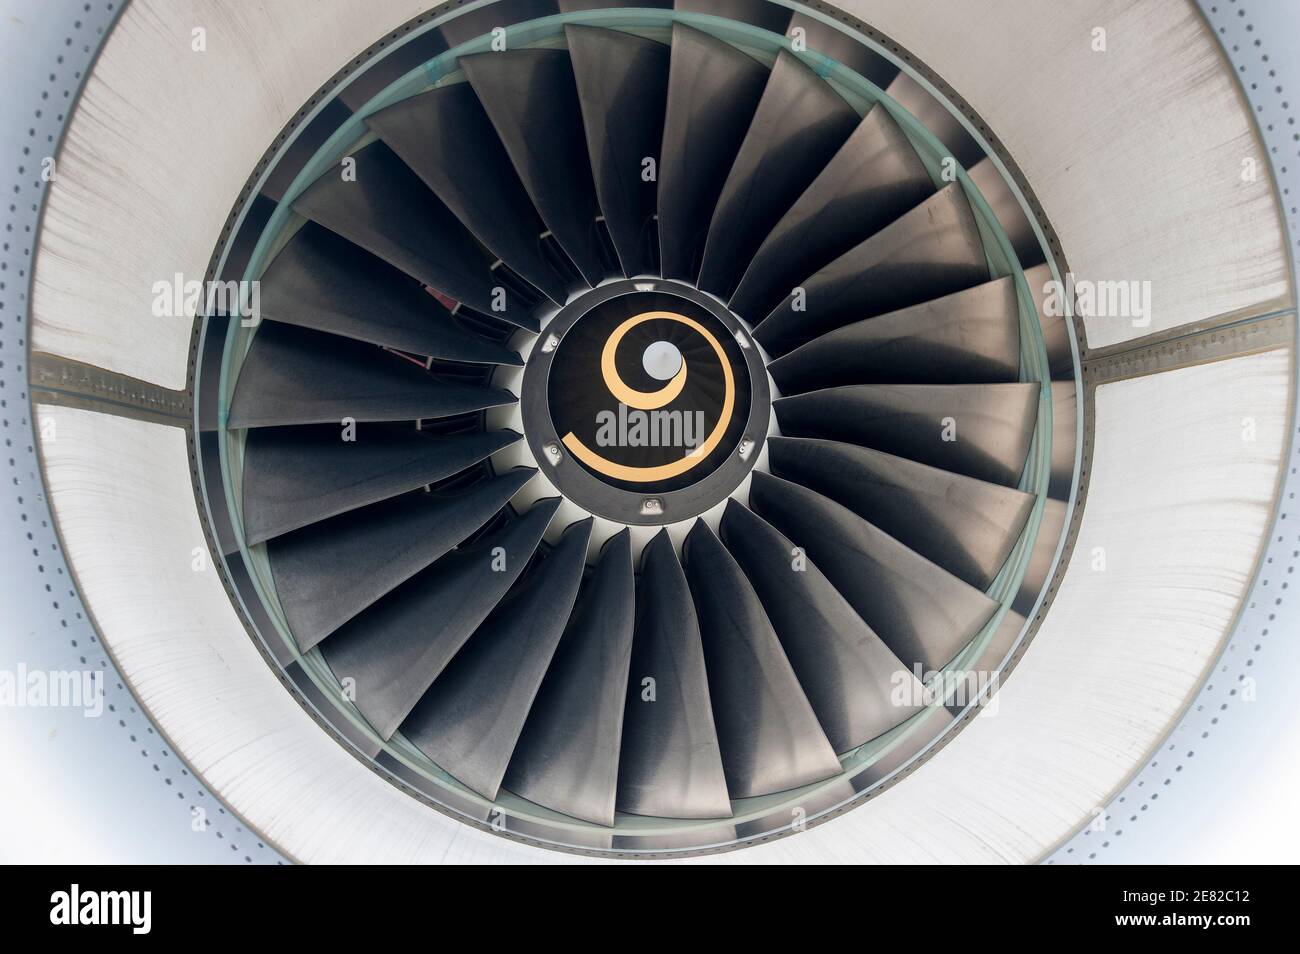 ALLEMAGNE, aéroport de Hambourg , phase d'essai avec biocarburant , Lufthansa jet Airbus A321 , une turbine est alimentée avec 50 pour cent biocarburant un mélange de Jatropha , huile Camelina et graisse animale , moteur d'avion , cercle rond ECO kerosine Banque D'Images